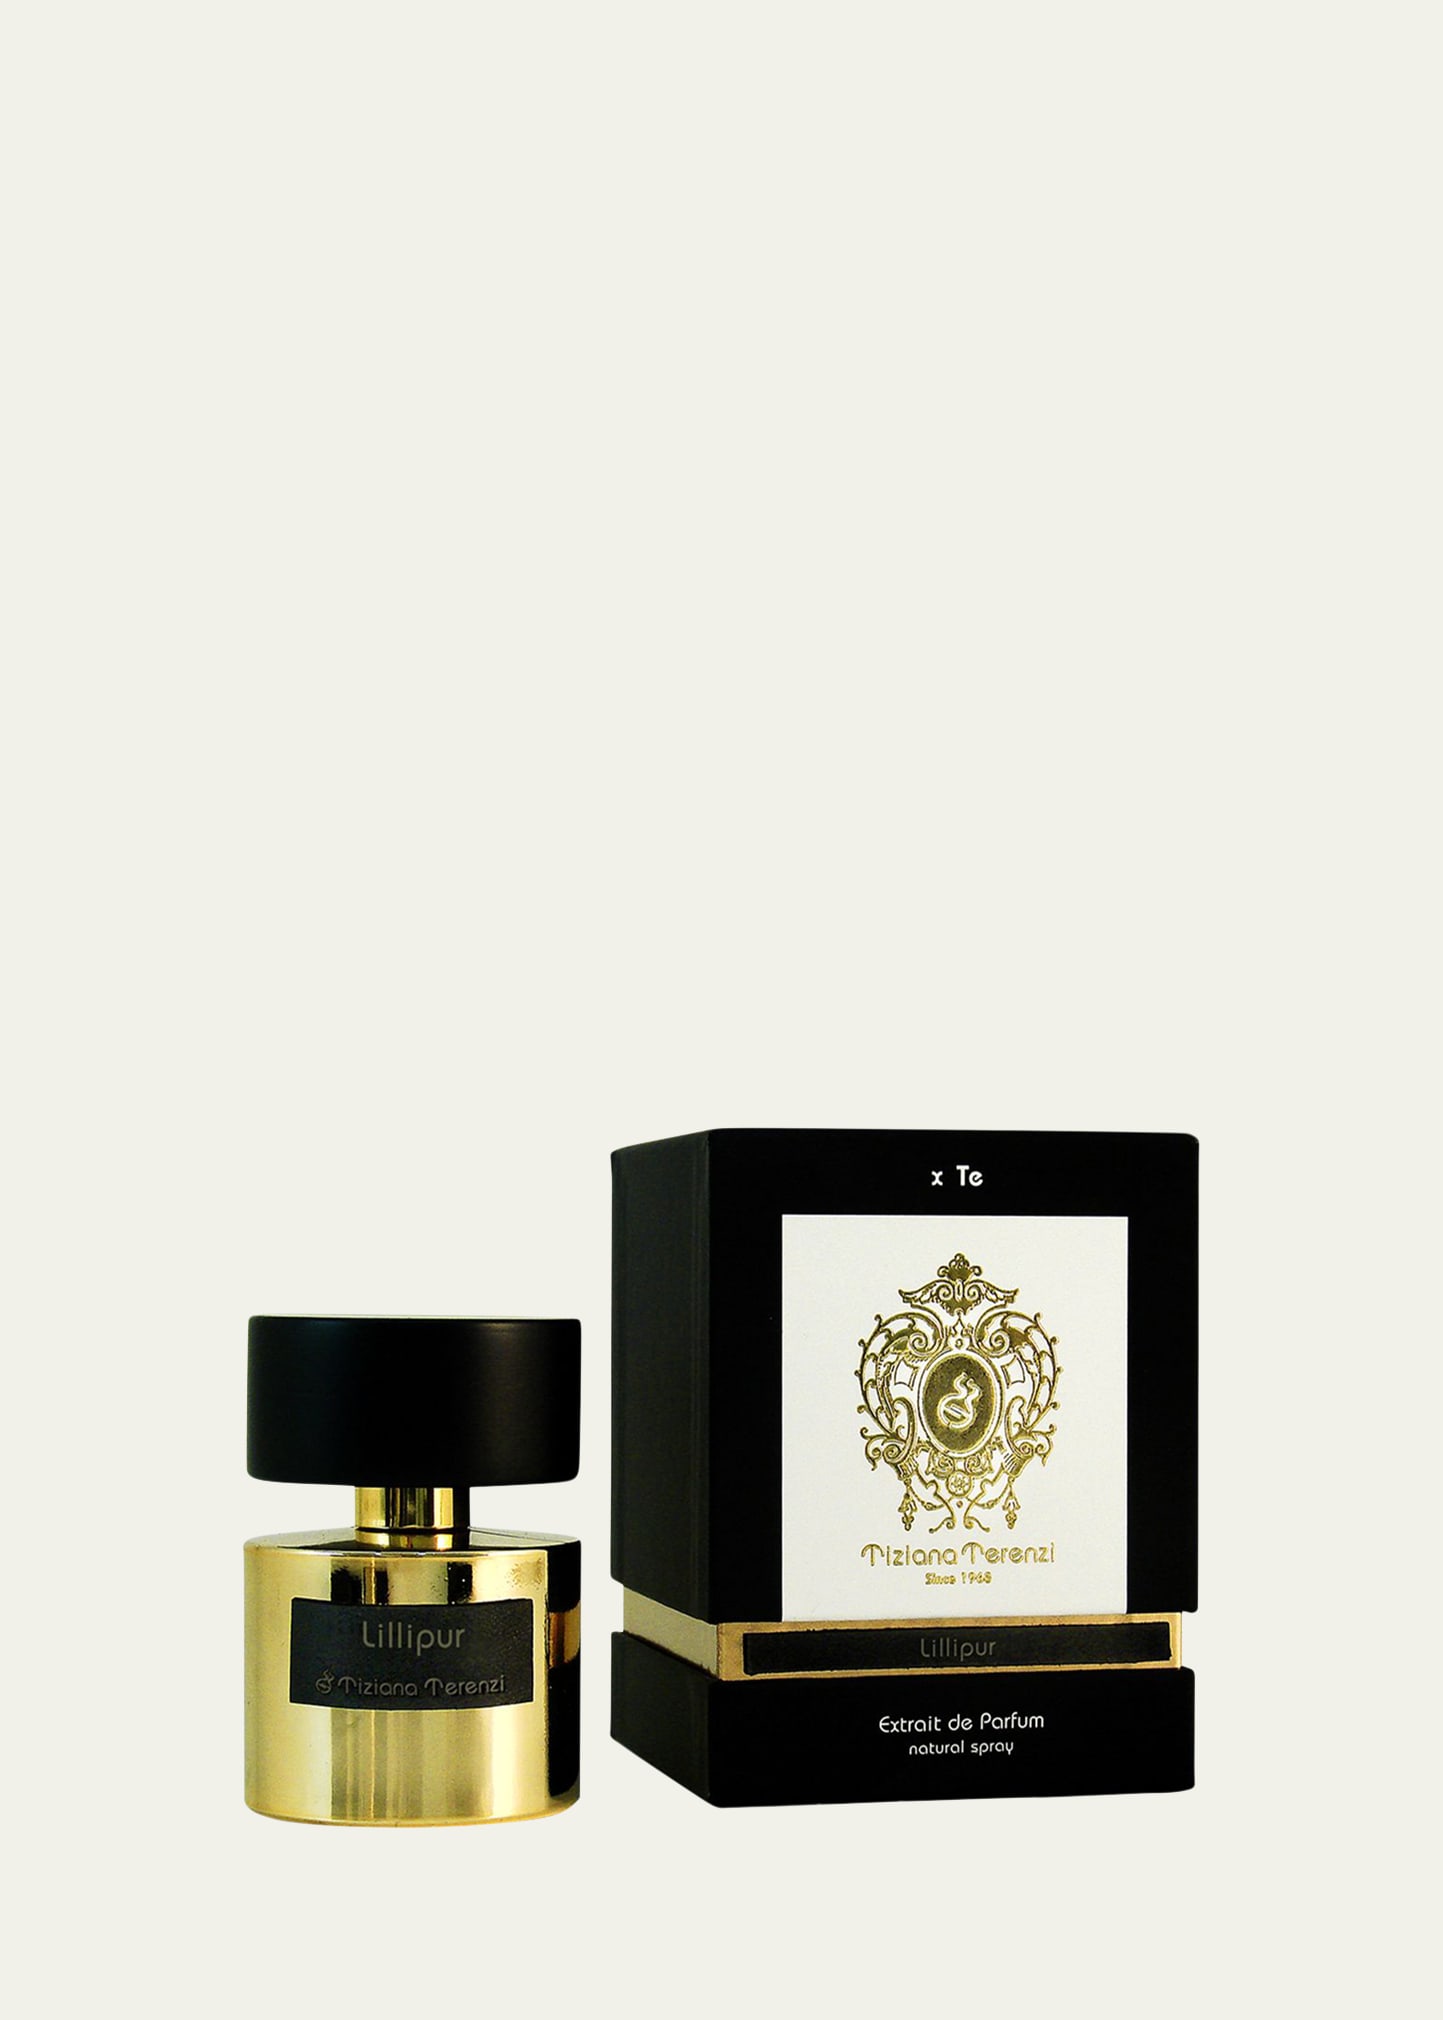 Lillipur Extrait de Parfum, 3.4 oz.